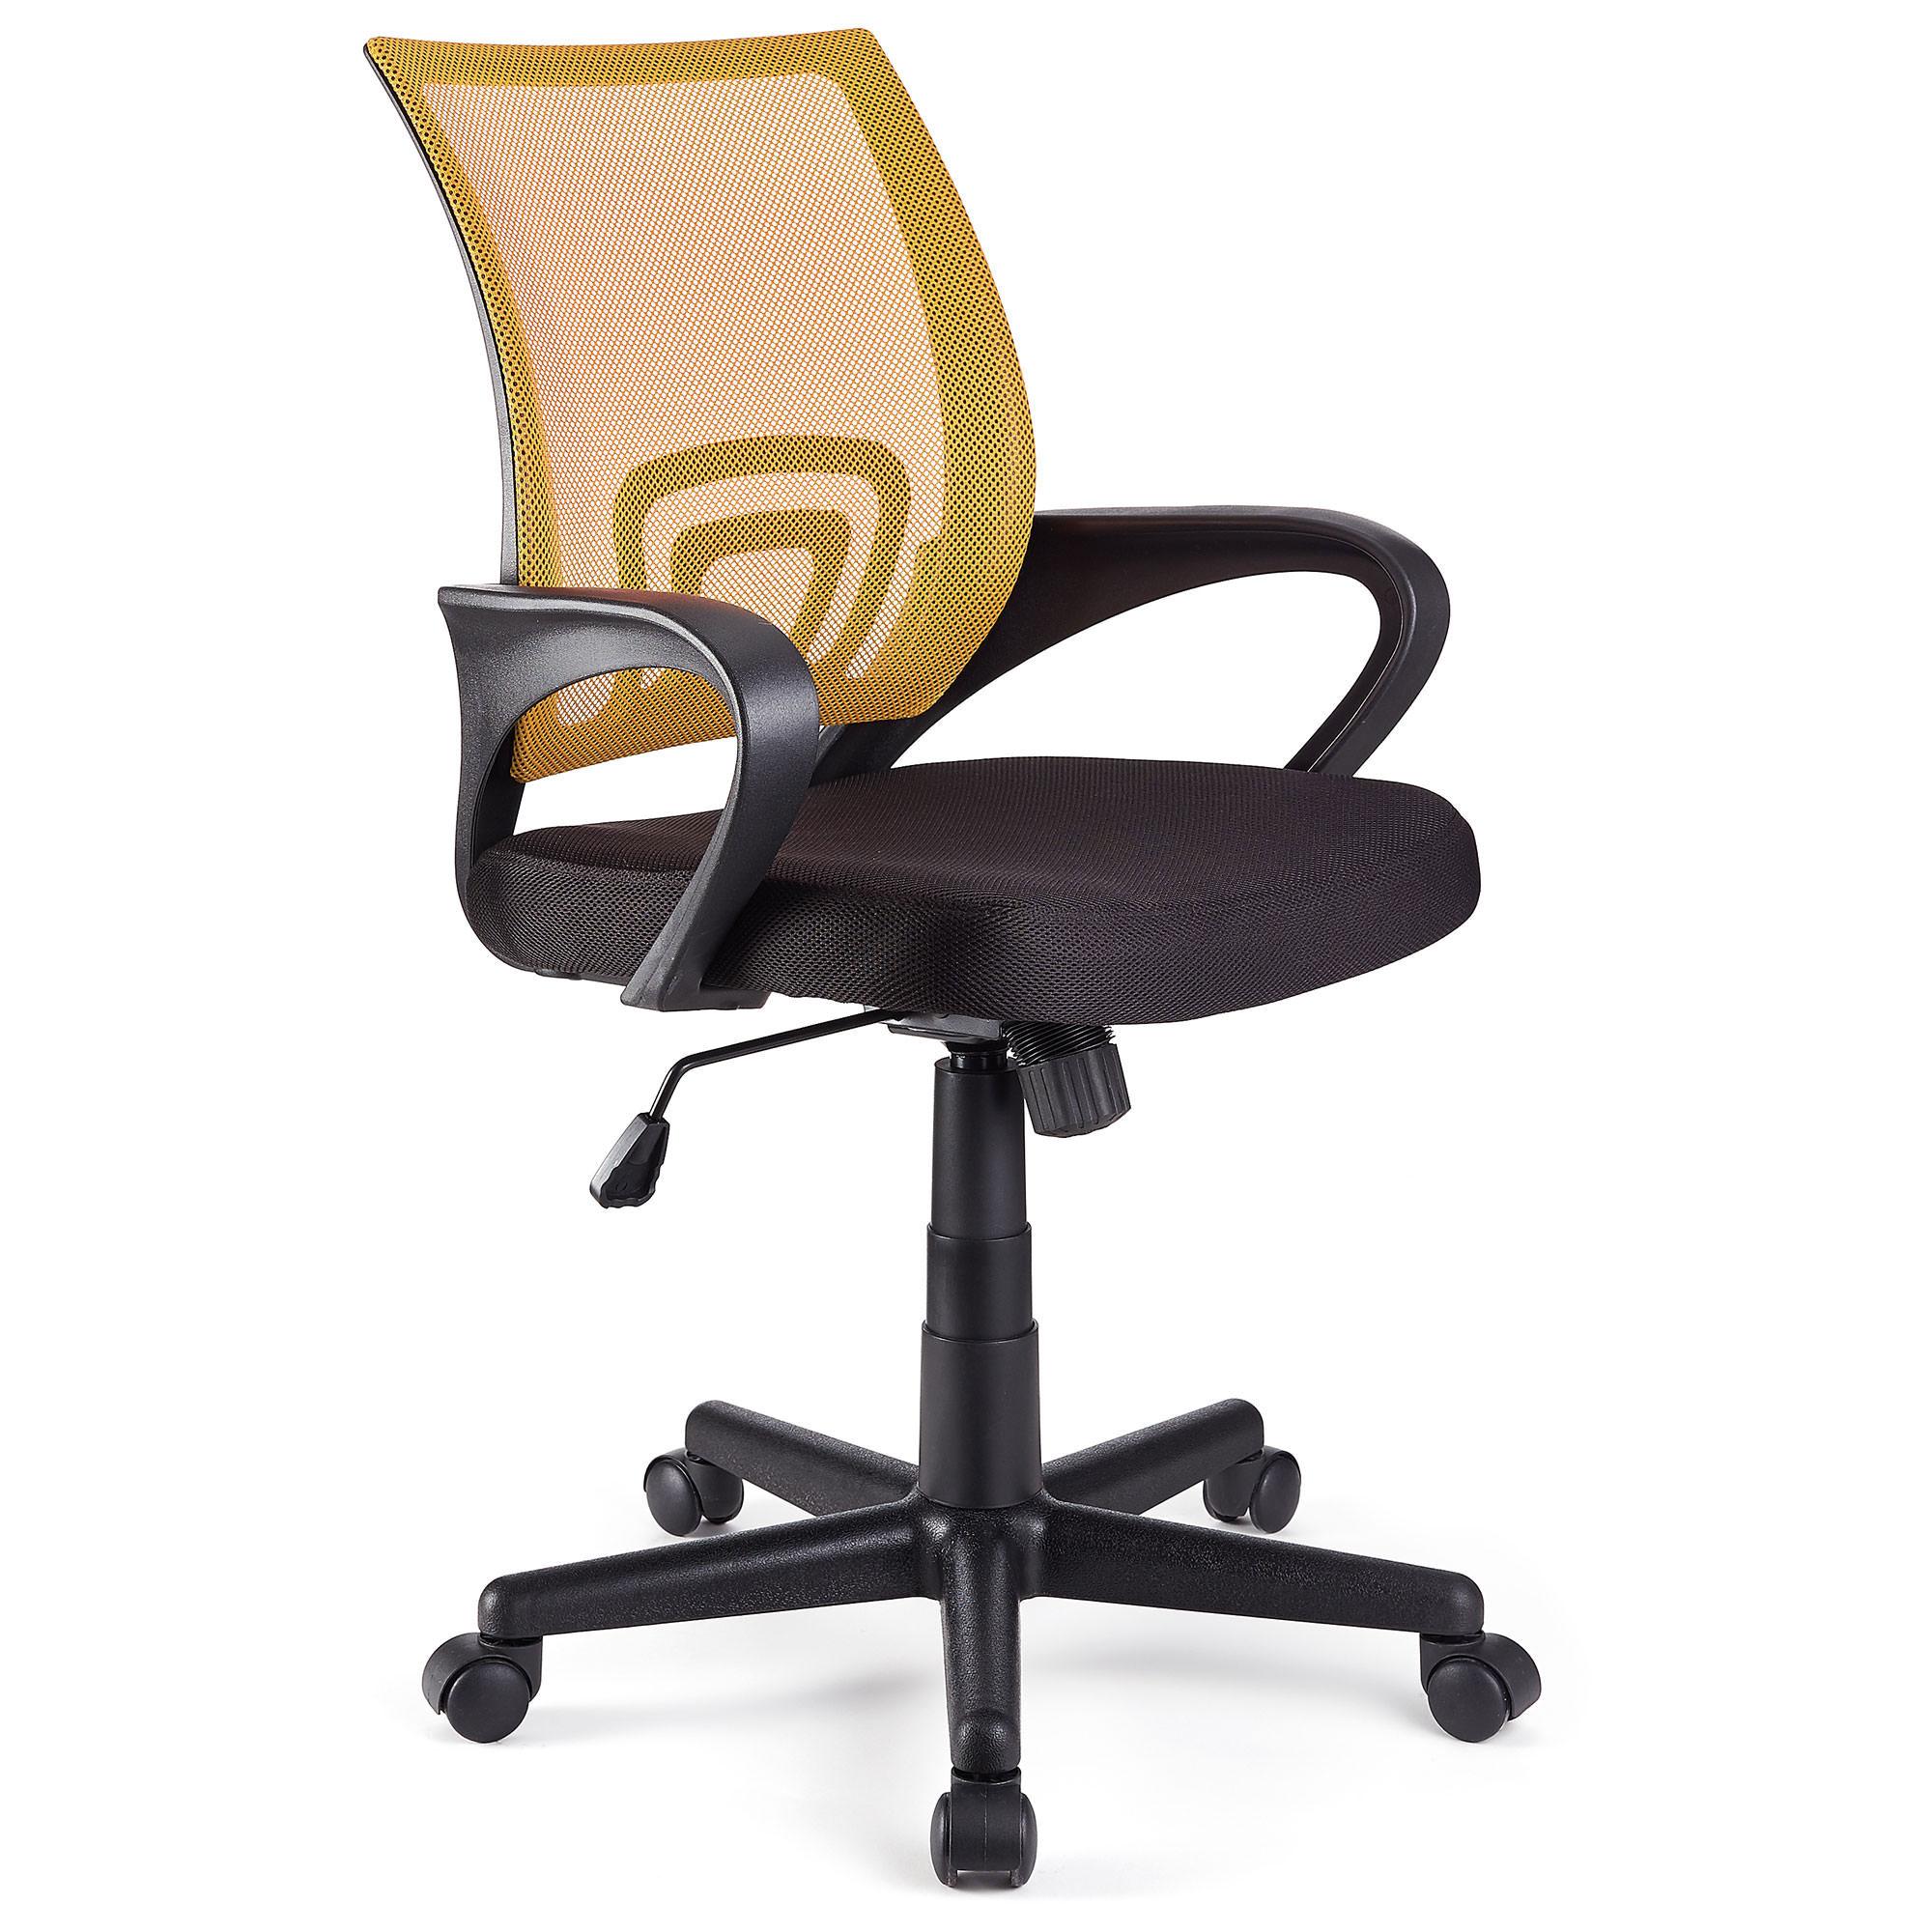 Cadeira de Escritório SEUL, Design Atractivo, Assento Acolchoado, Cor Amarelo